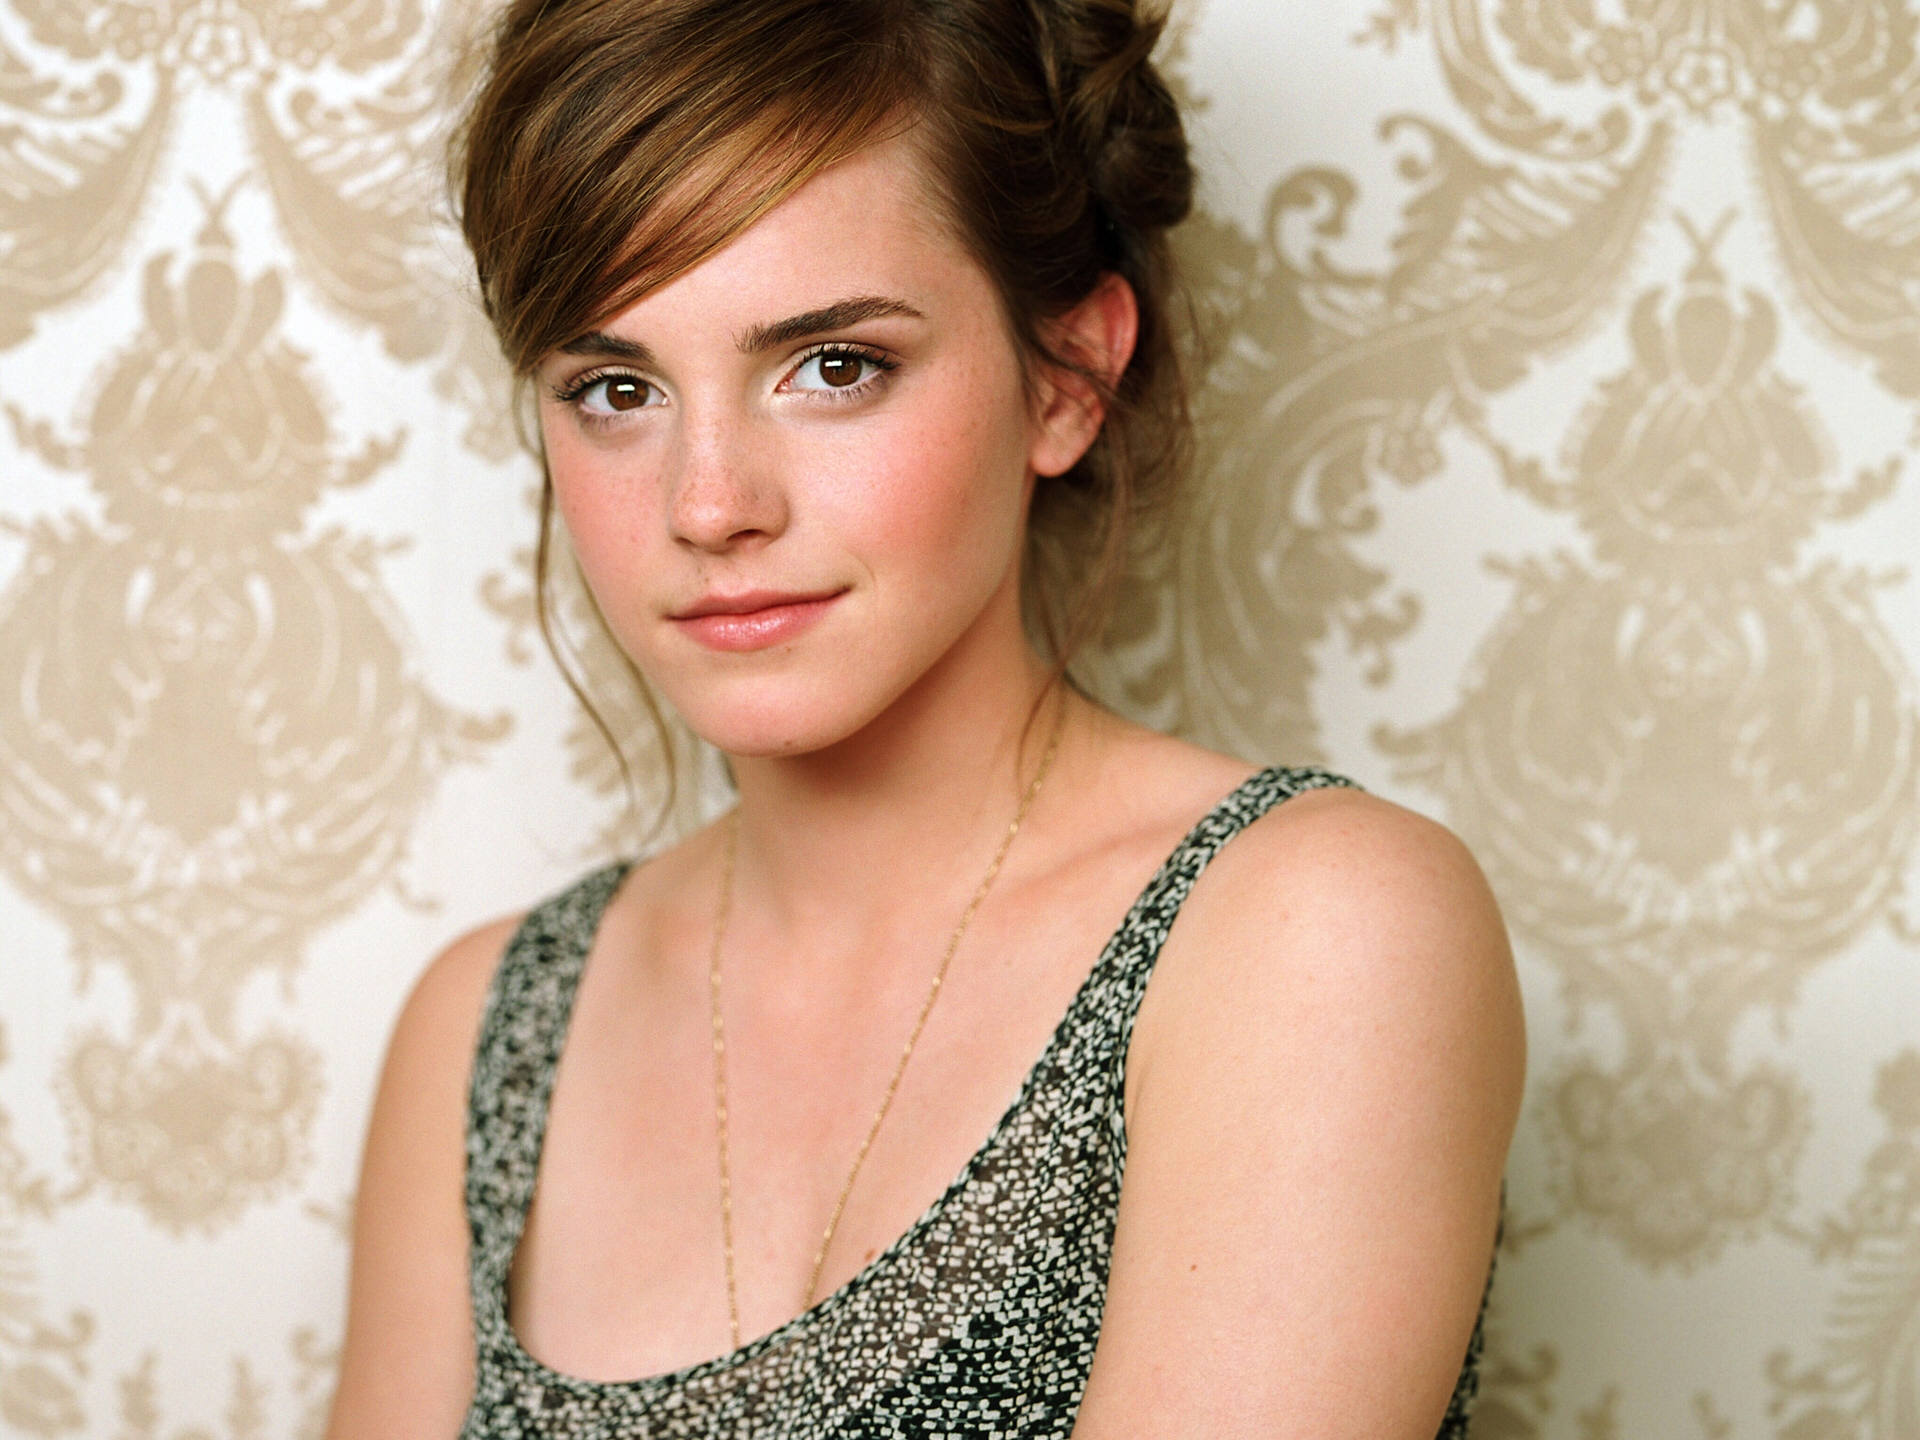 Emma Watson. 